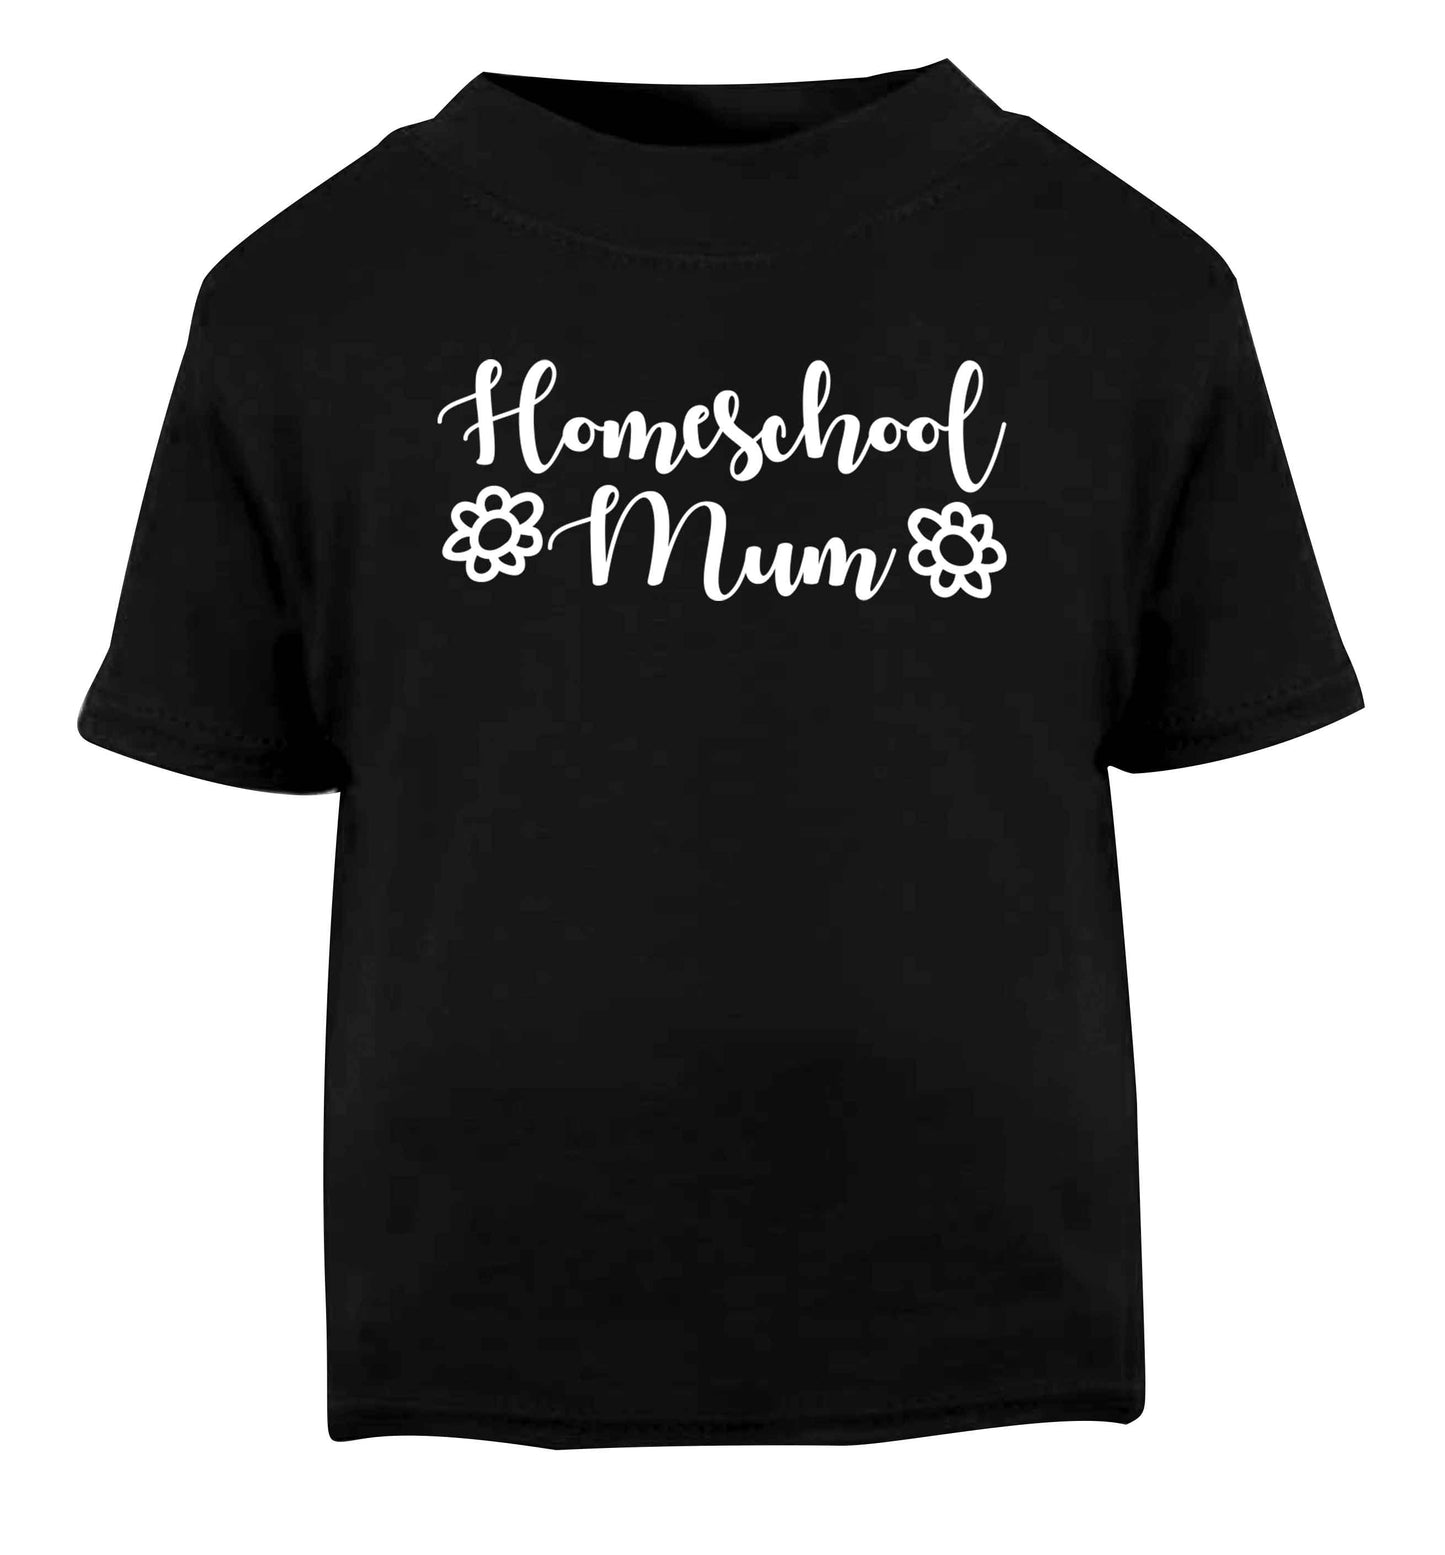 Homeschool mum Black Baby Toddler Tshirt 2 years